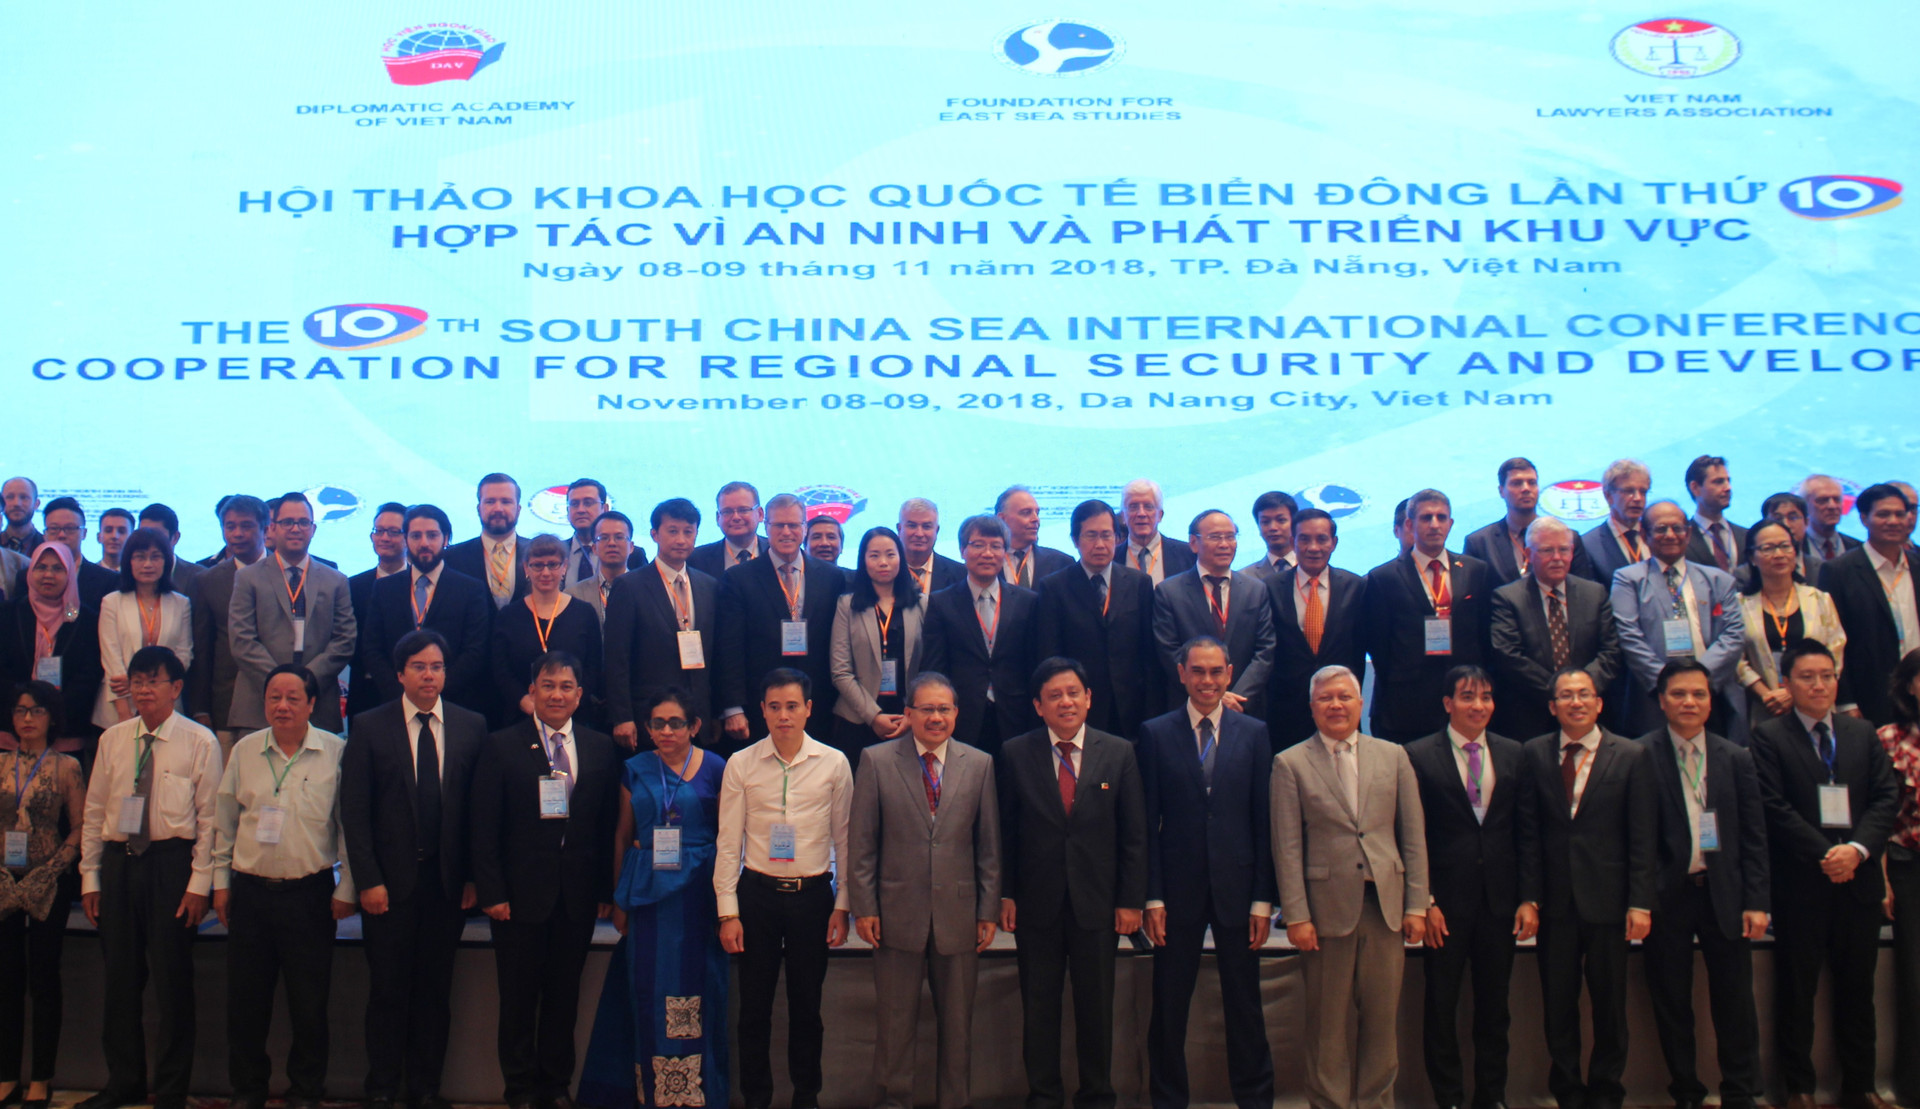 Hội thảo Khoa học quốc tế biển Đông lần thứ 10 “Hợp tác vì an ninh và phát triển khu vực”